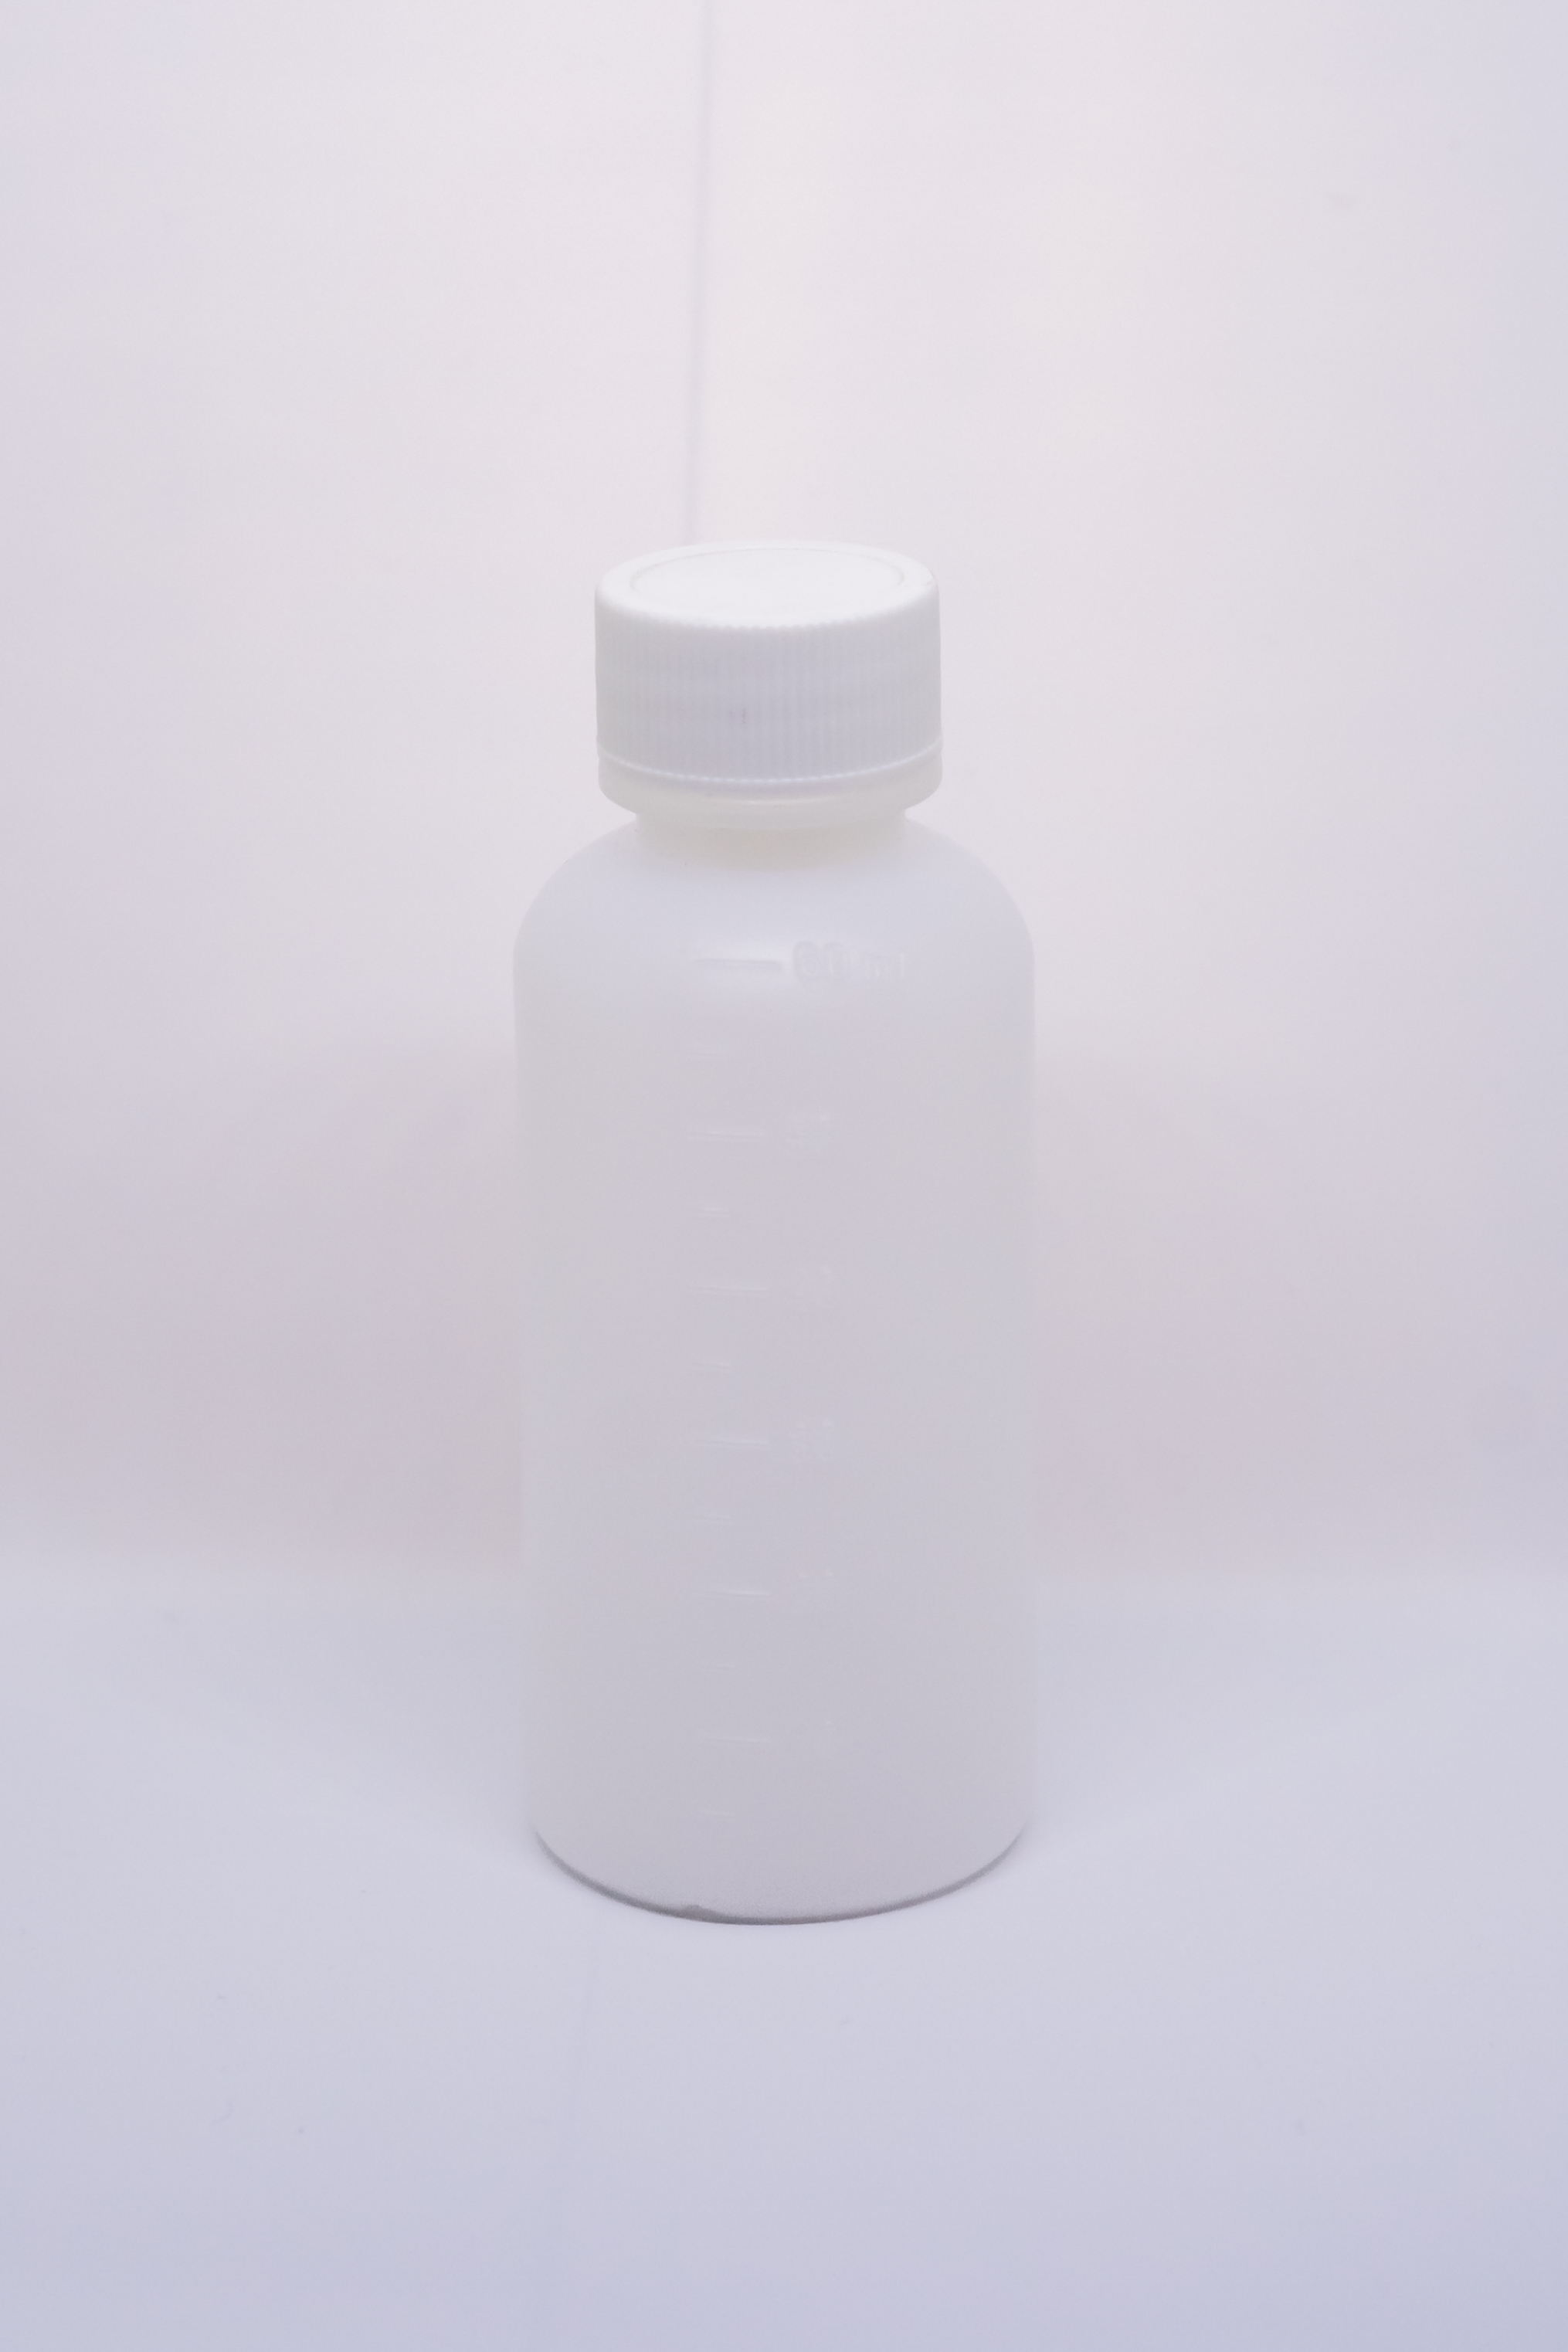 בקבוק 60 מ"ל עם שנתות HDPE פייה 20 מ"מ טבעי